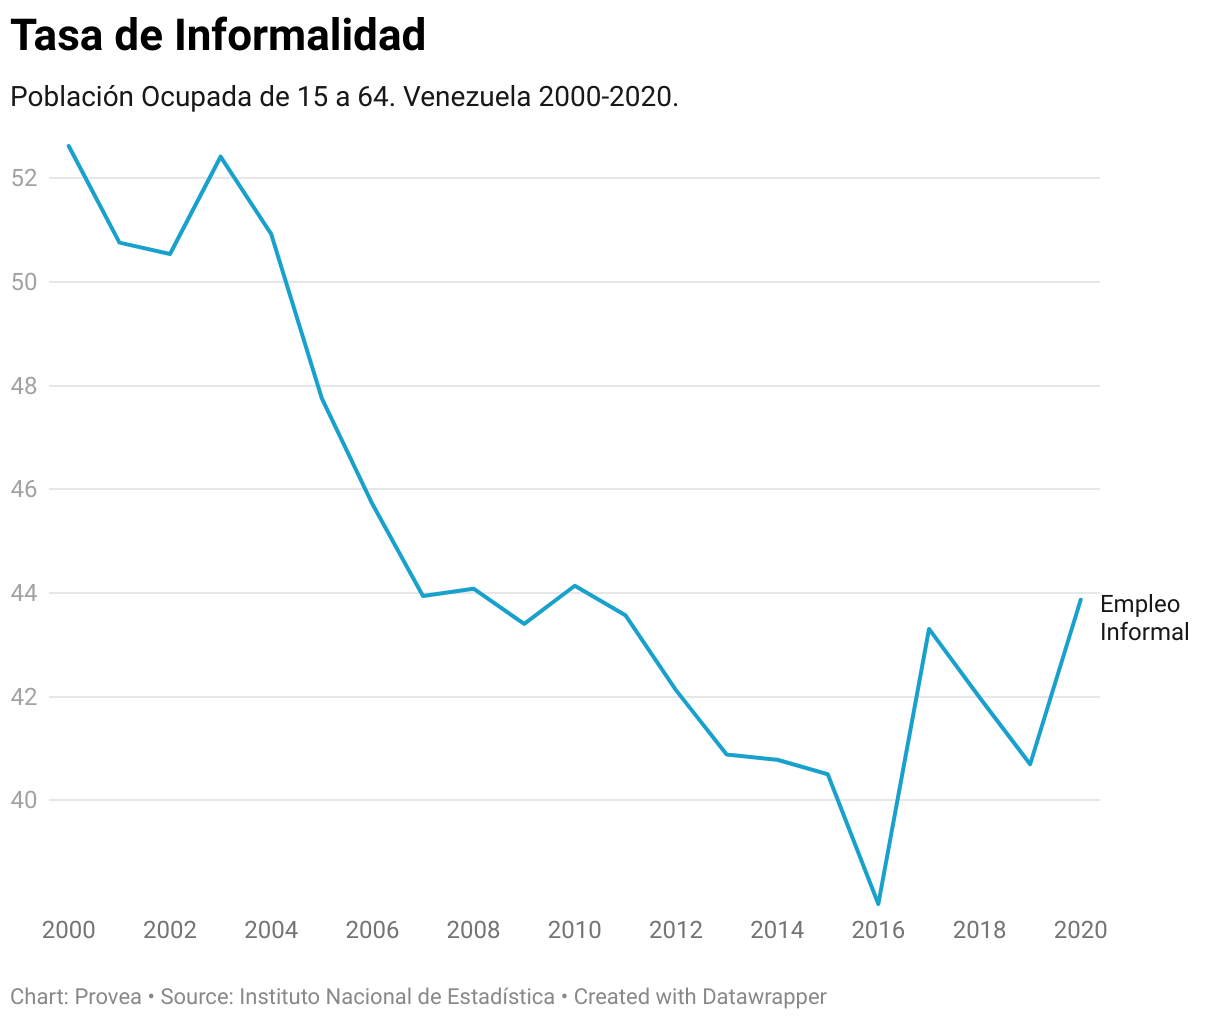 La tasa de informalidad ha venido cayendo desde el boom petrolero (2004). Se registra aumento desde 2016 por efecto de la emergencia humanitaria.